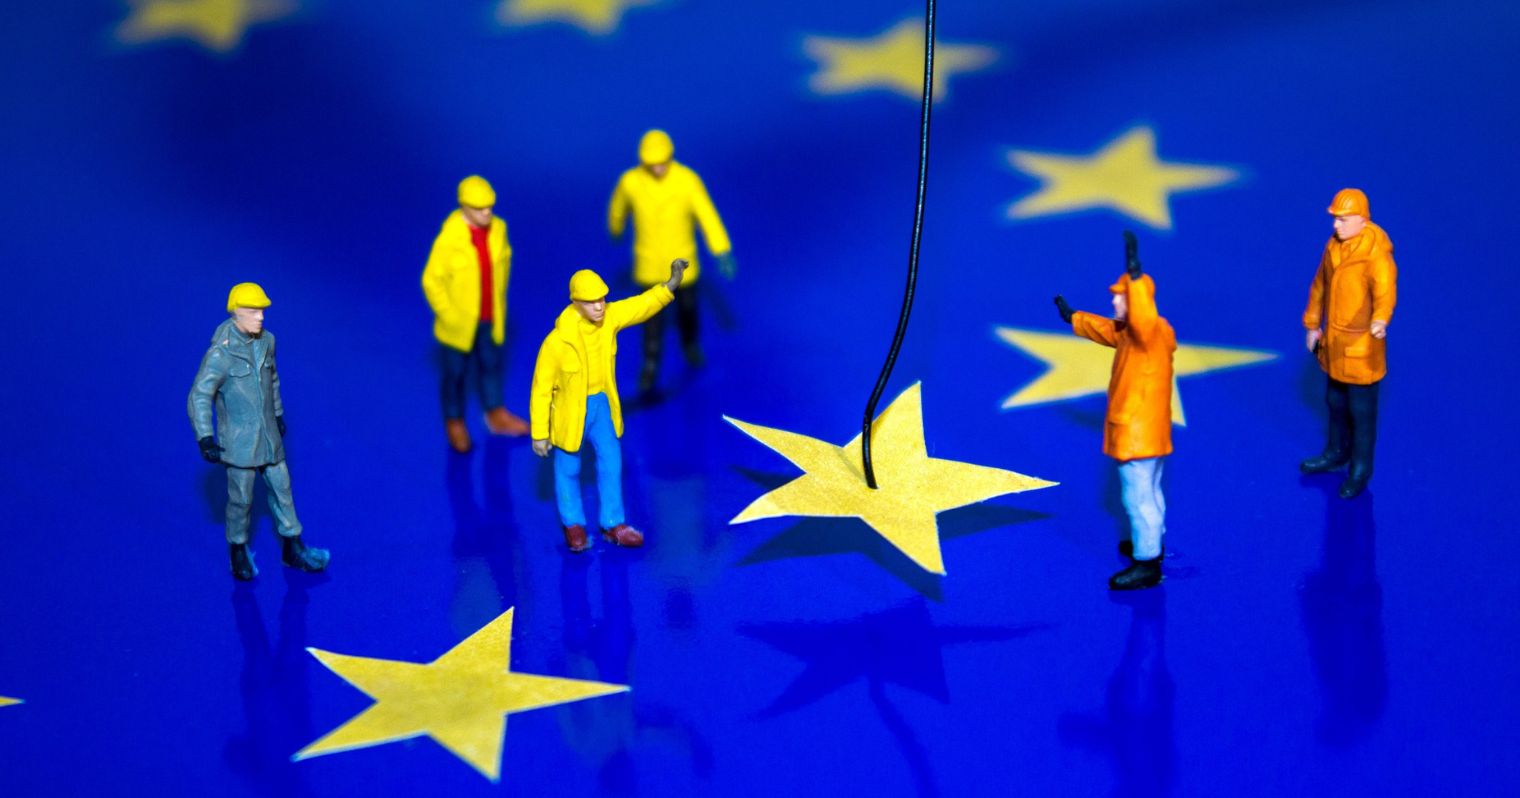 Az EU zászló sárga csillagait kicsi makett emberkék emelik le a zászlóról